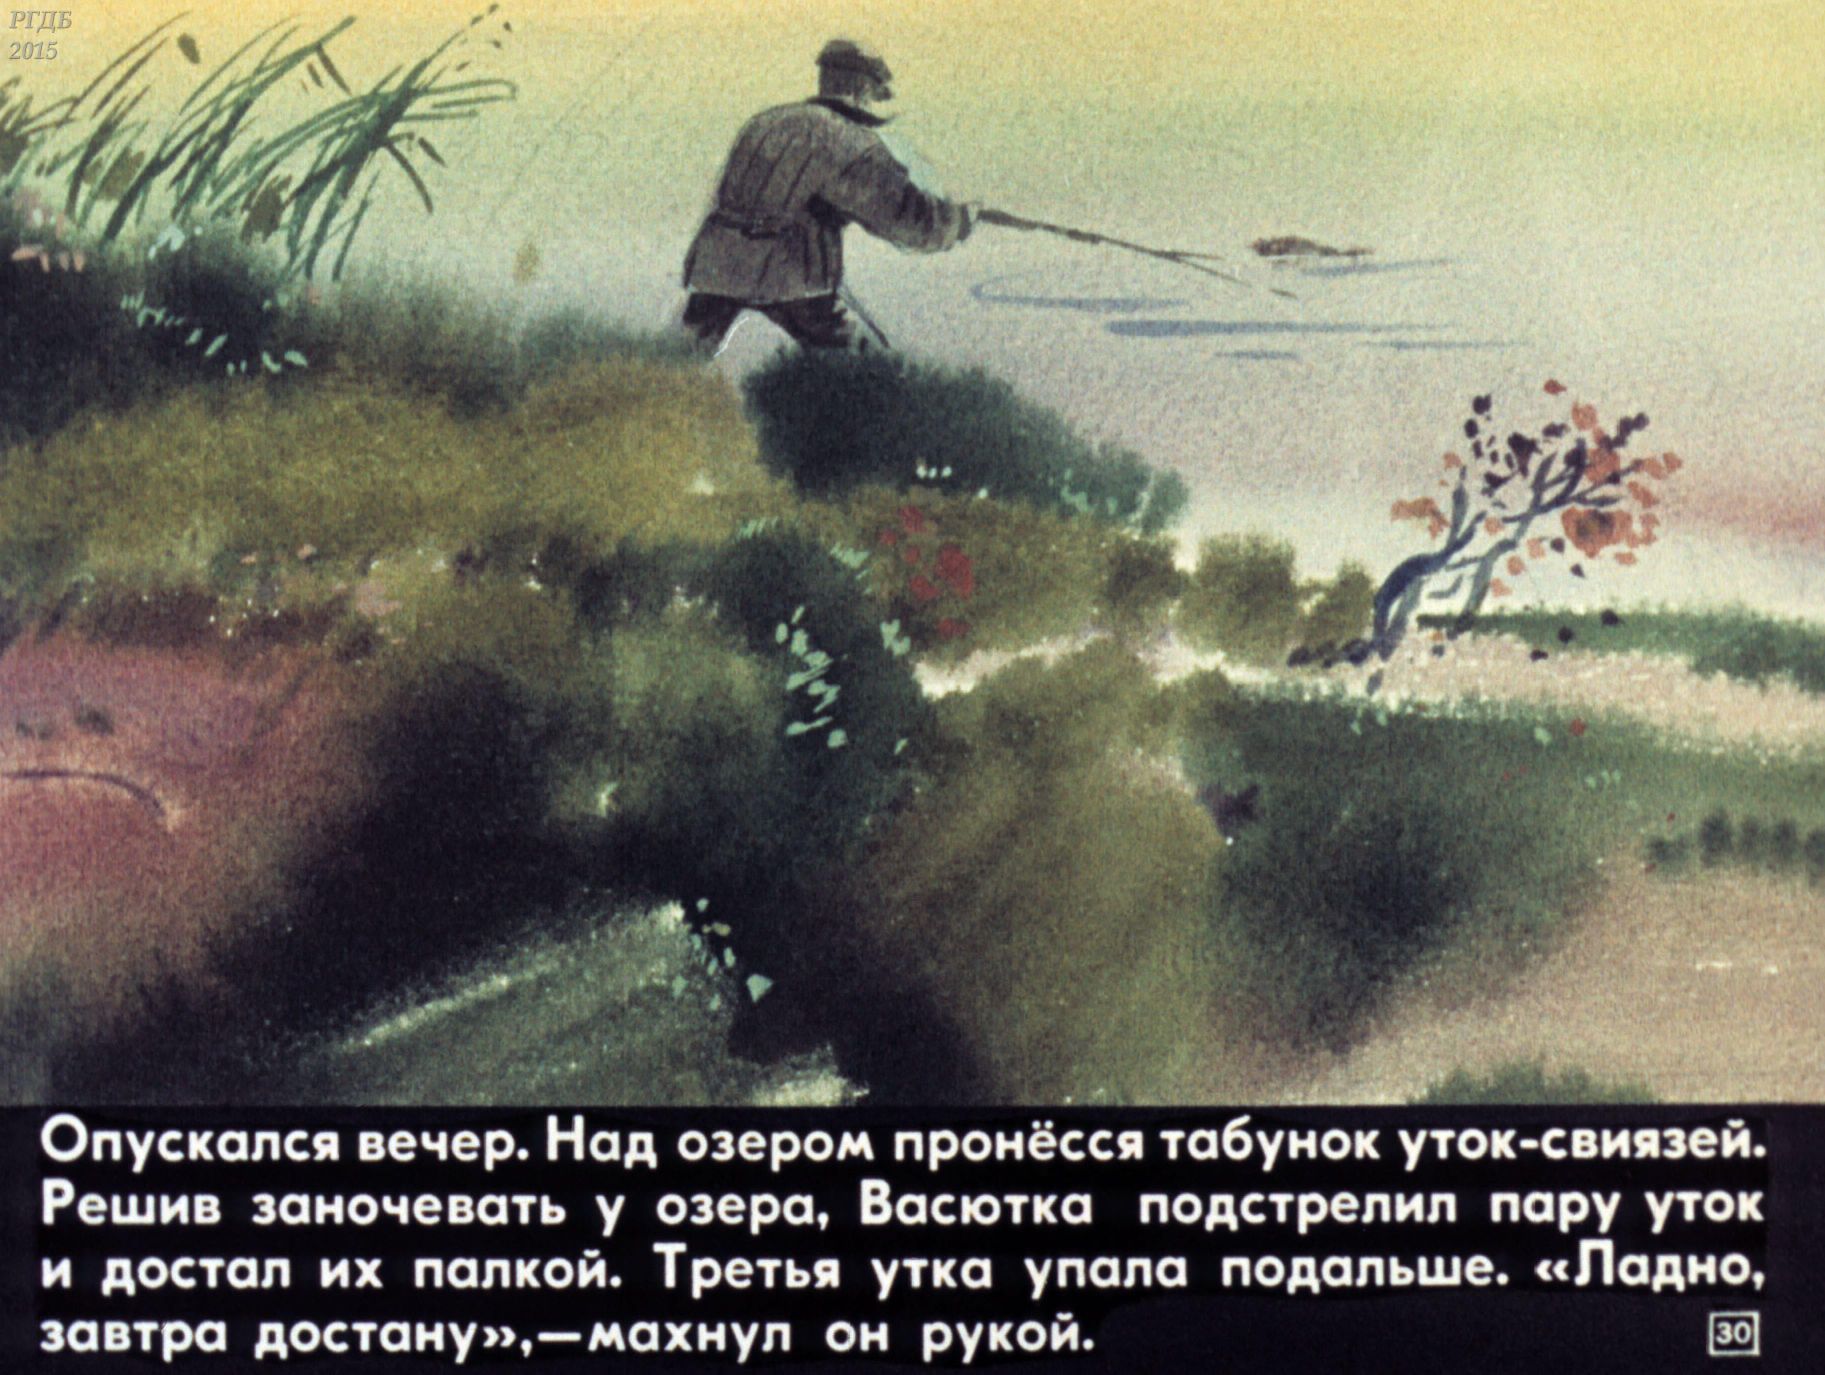 Почему стала плохо ловиться рыба васюткино. Васюшки но озеро. Иллюстрации к рассказу Астафьева Васюткино озеро. Иллюстрация к произведению Васюткино озеро Астафьев.